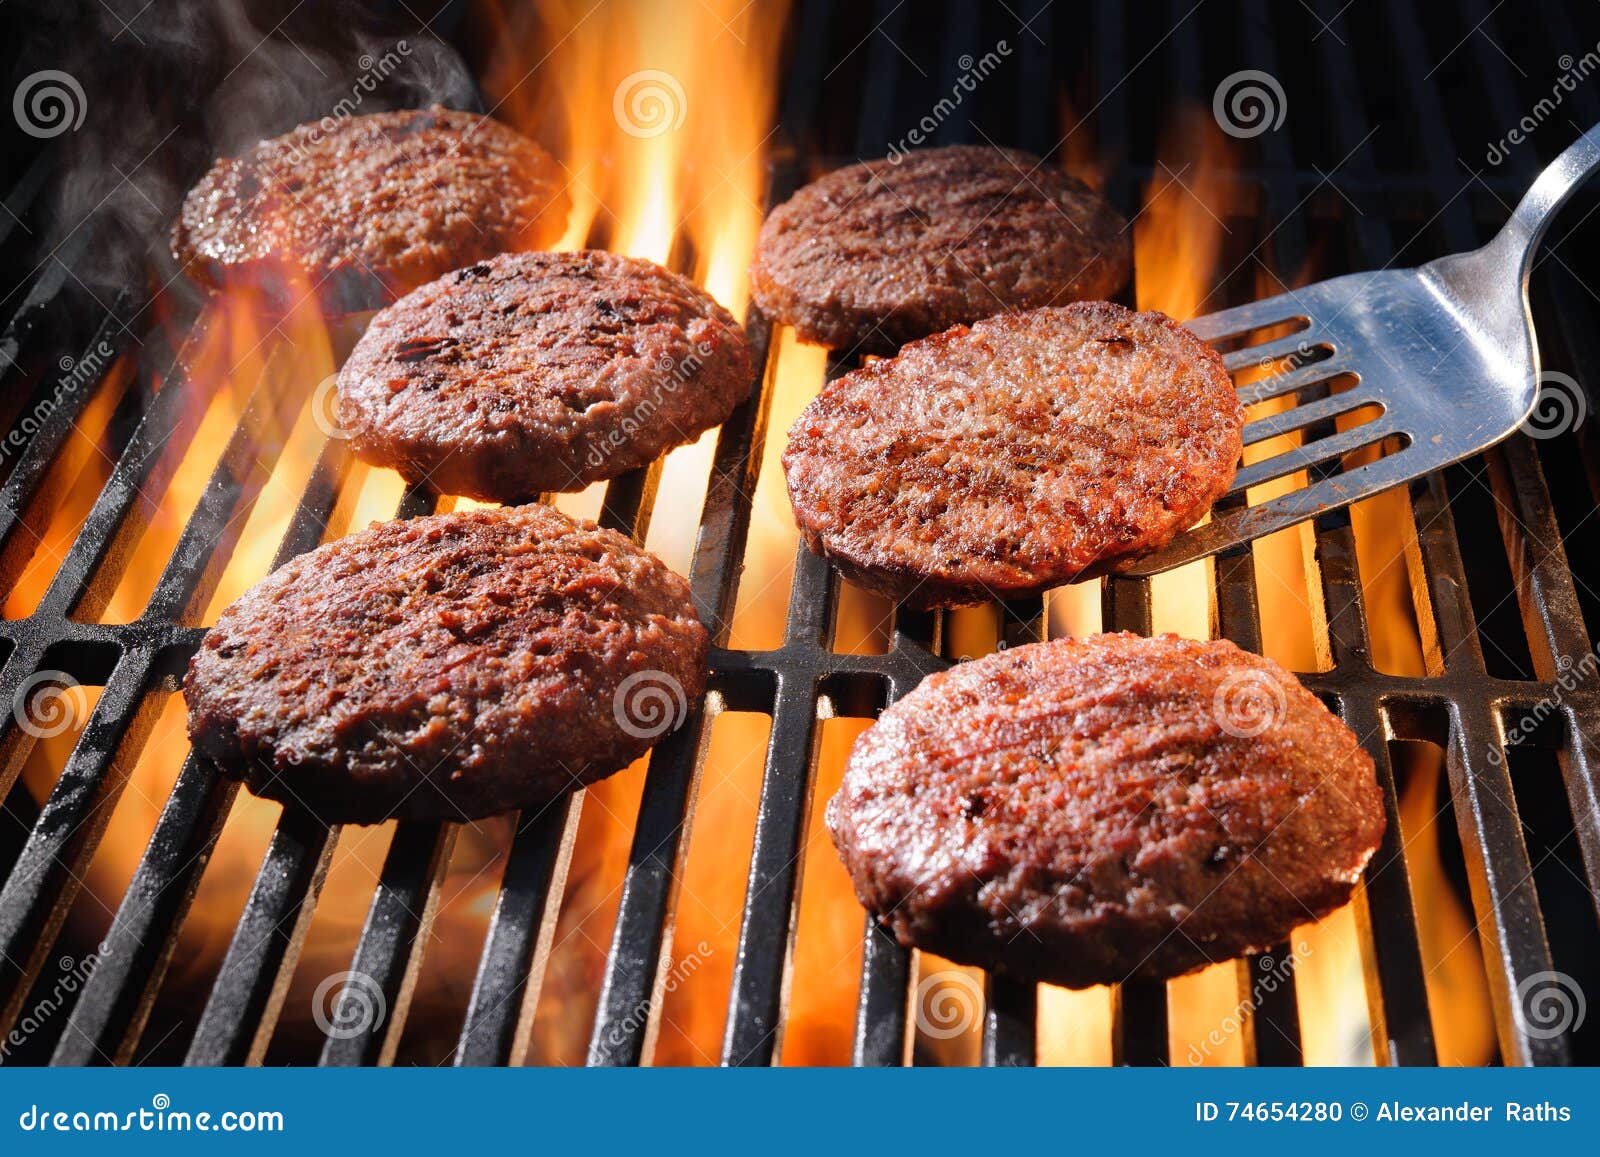 Rindfleischhamburgerpastetchen, die auf dem Grill zischen. Saftige Rindfleischhamburgerpastetchen, die über heißen Flammen auf dem Grill zischen